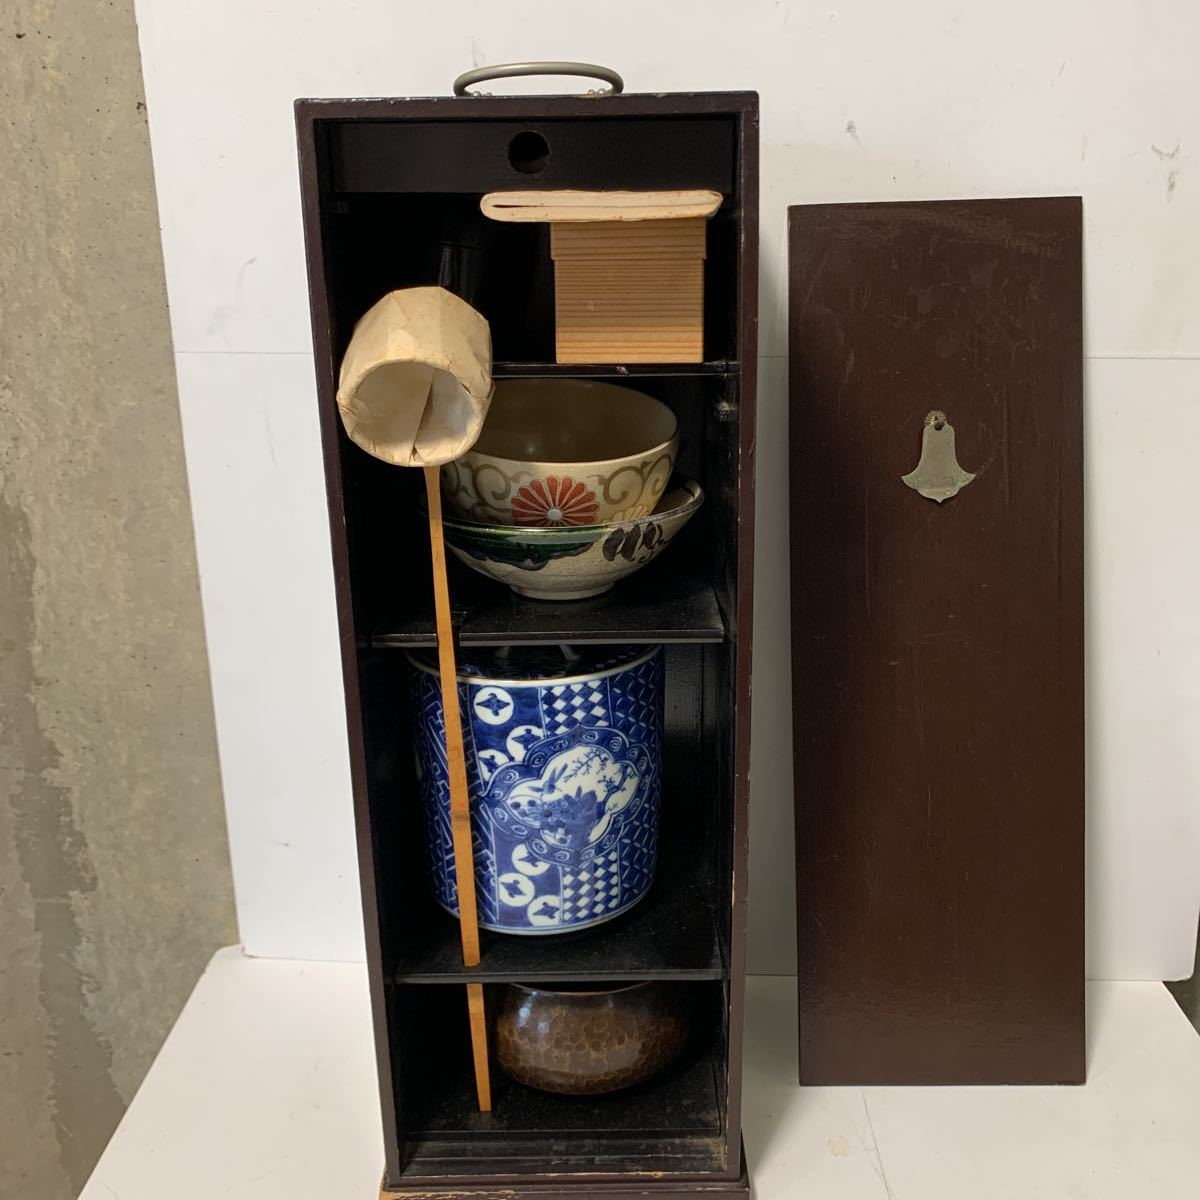 茶道具 セット 木箱入り 道具一式 茶道 茶碗 棗 柄杓 茶筅 茶杓 茶道